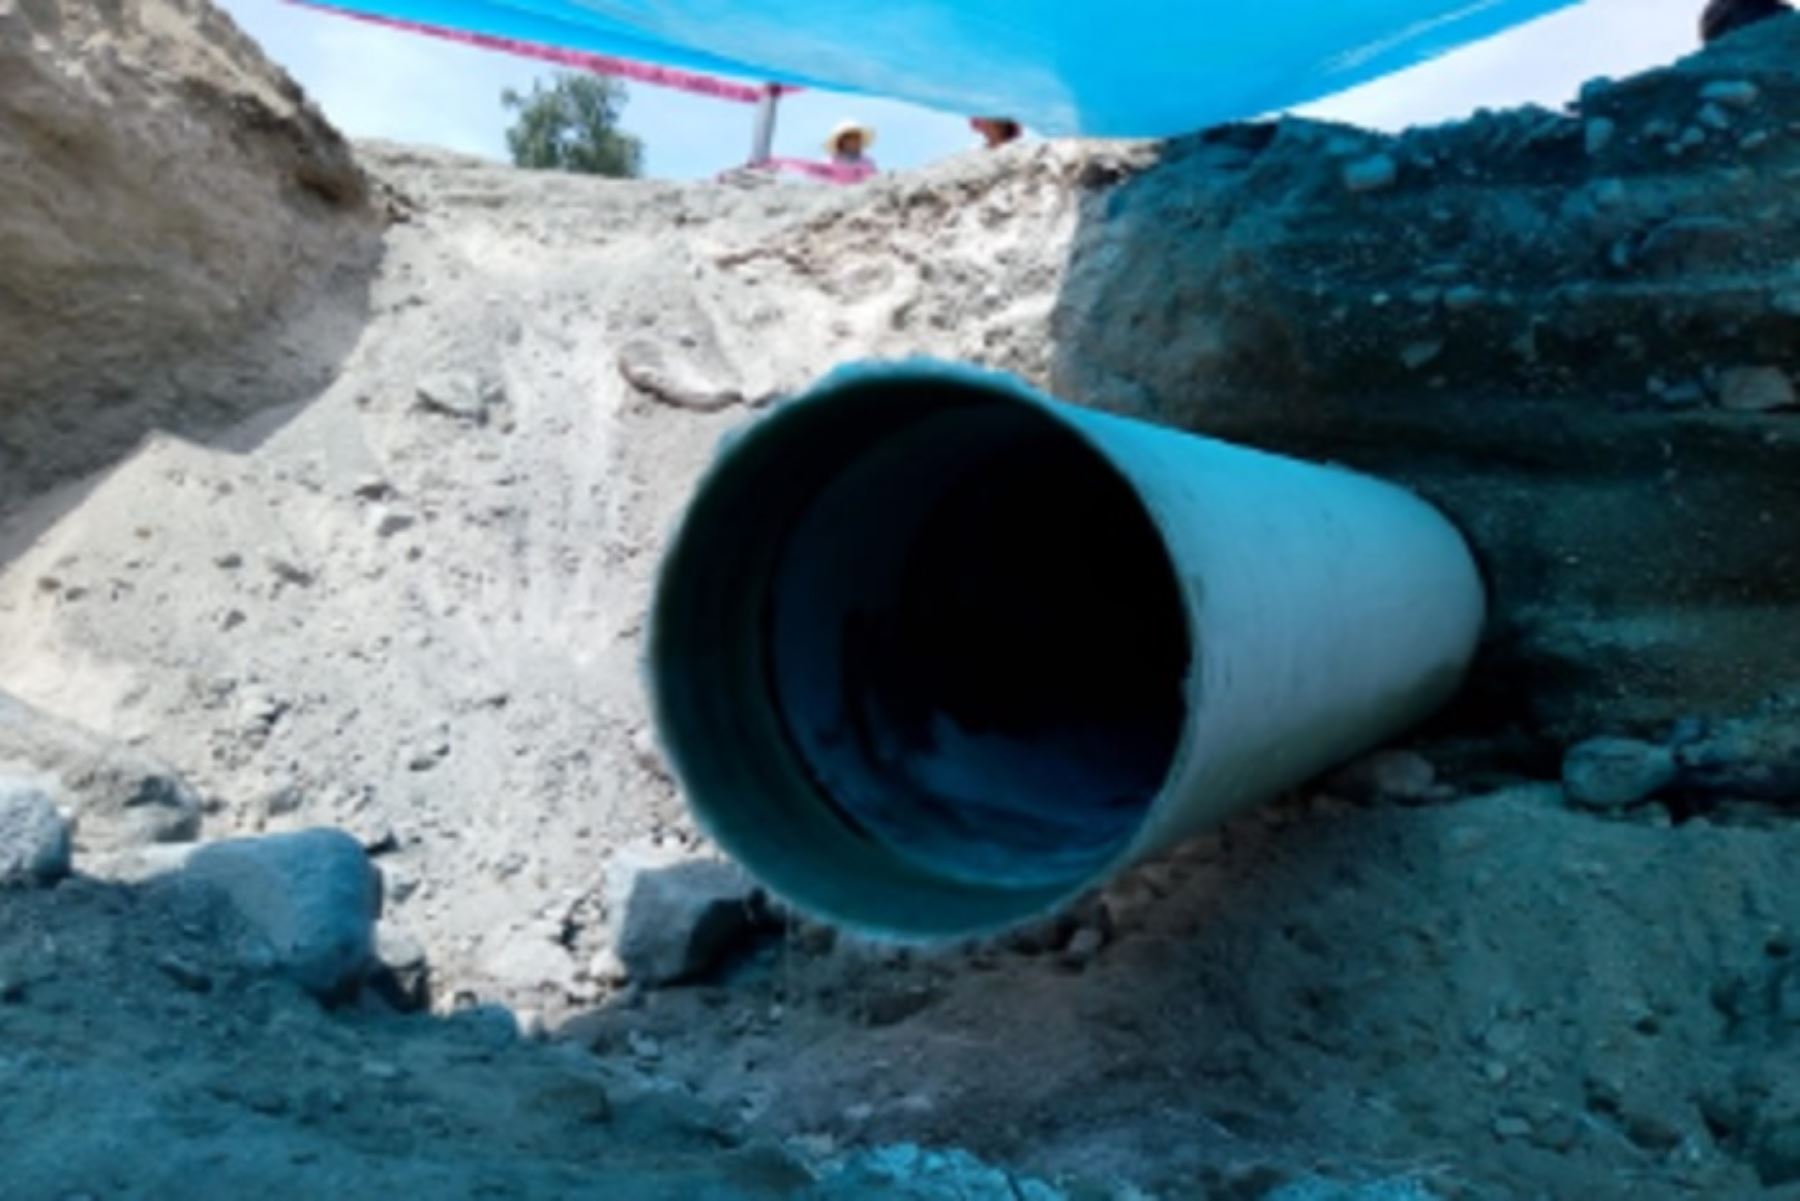 Alrededor de 200,000 pobladores de Arequipa se quedaron sin el servicio de agua potable en sus domicilios, tras la rotura de una línea de conducción que abastece 11 reservorios del cono norte de la ciudad.